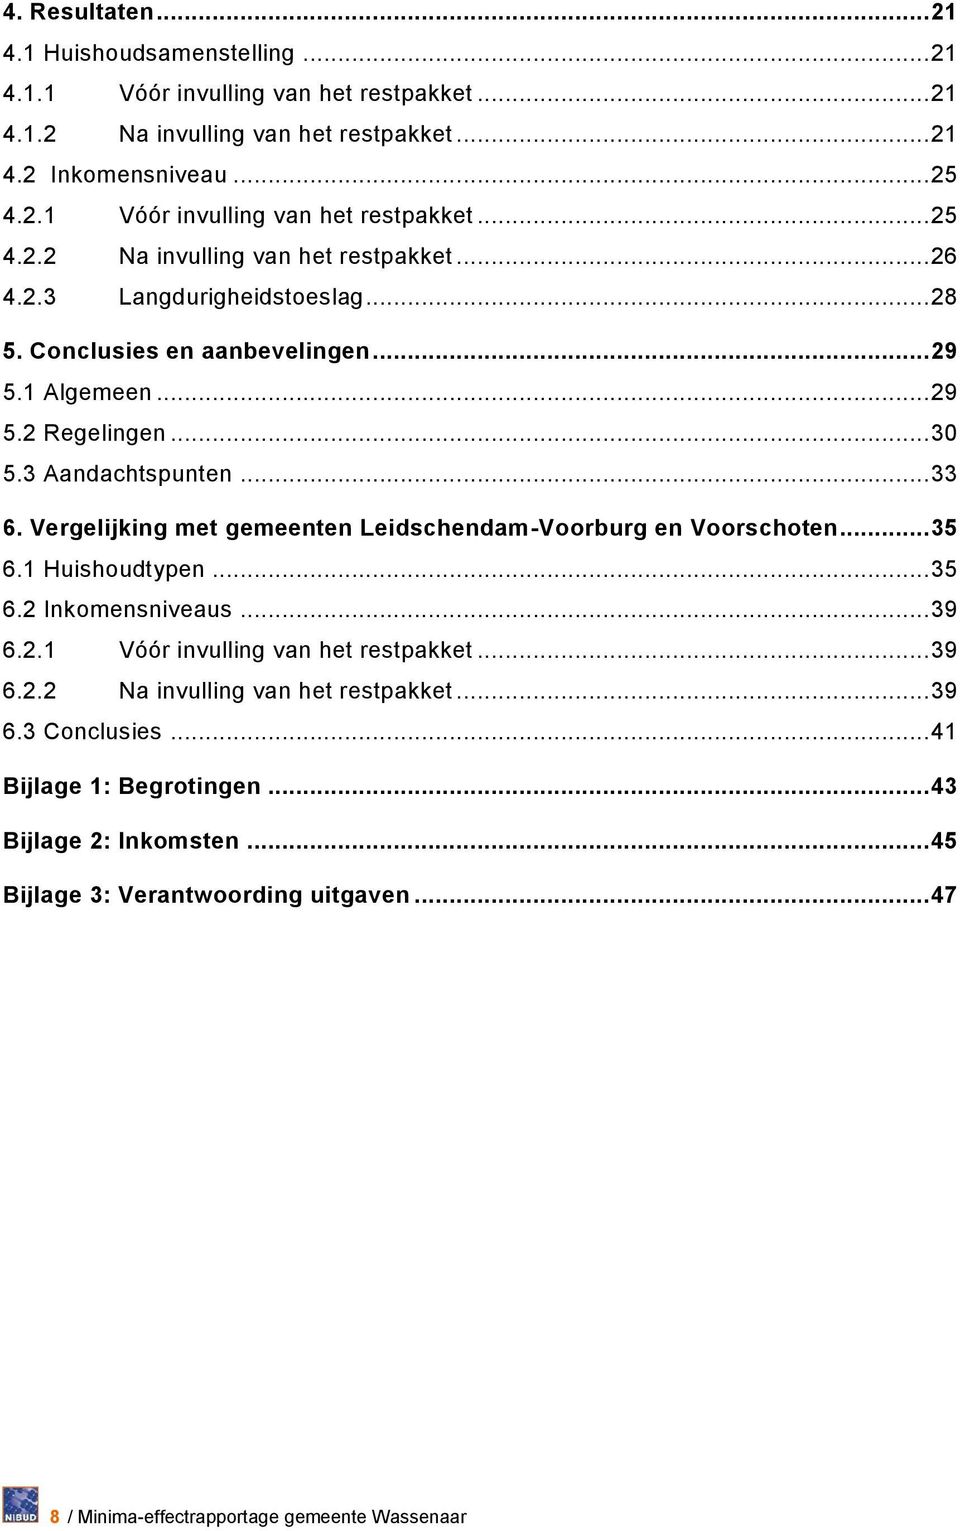 Vergelijking met gemeenten Leidschendam-Voorburg en Voorschoten... 35 6.1 Huishoudtypen... 35 6.2 Inkomensniveaus... 39 6.2.1 Vóór invulling van het... 39 6.2.2 Na invulling van het.